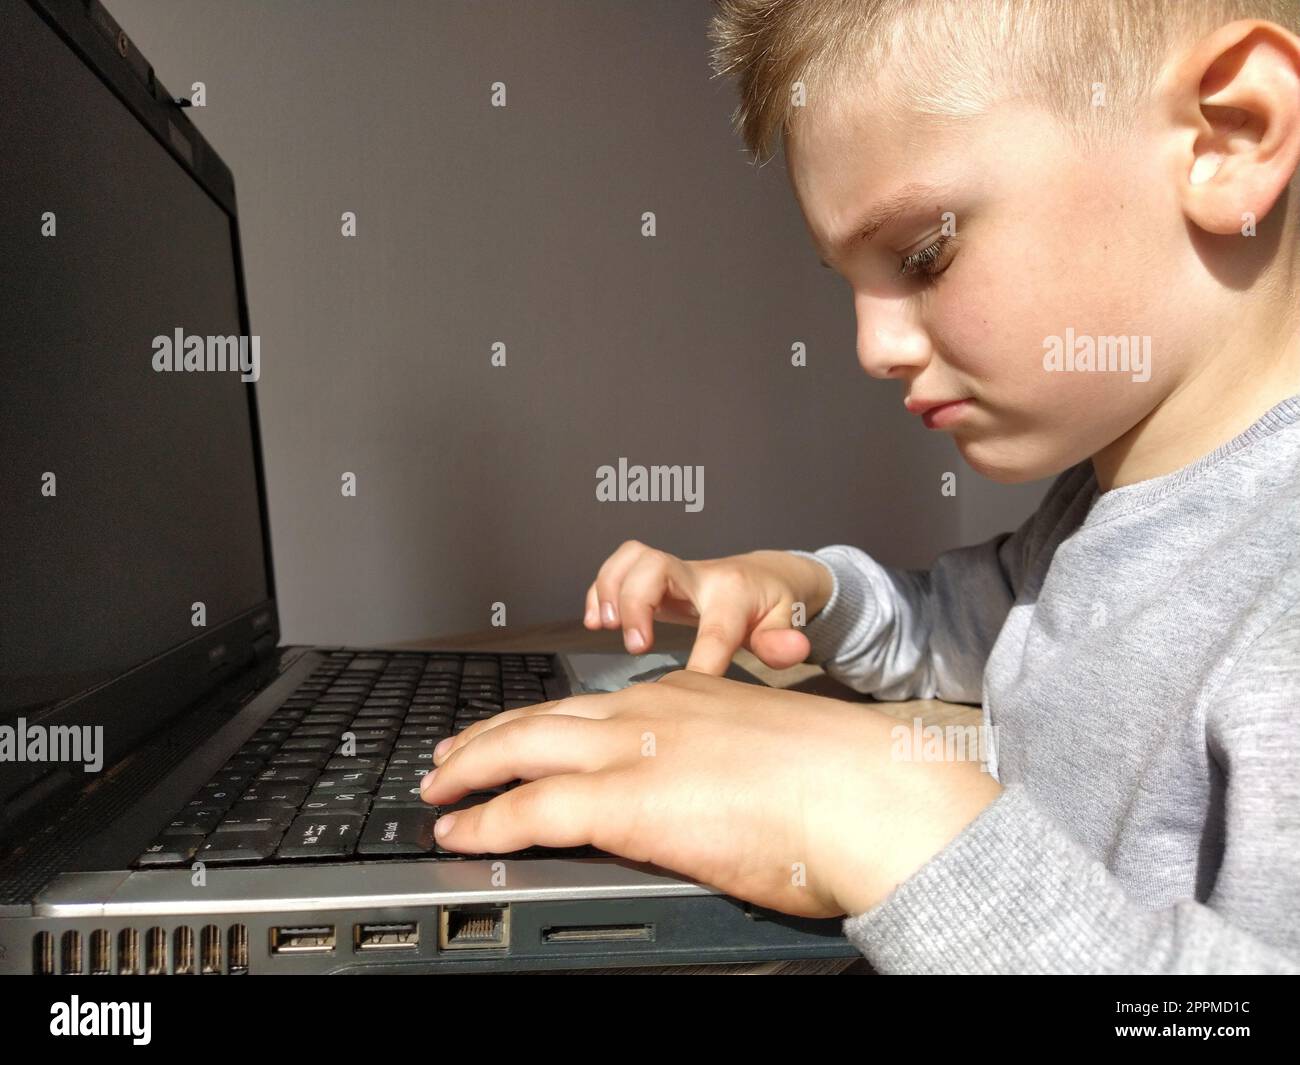 Le petit garçon avec l'ordinateur. Le garçon allume l'ordinateur portable. Le clavier noir. Un enfant aux cheveux blonds. Visage pensif. Concept d'éducation. Concept de dépendance aux gadgets Banque D'Images